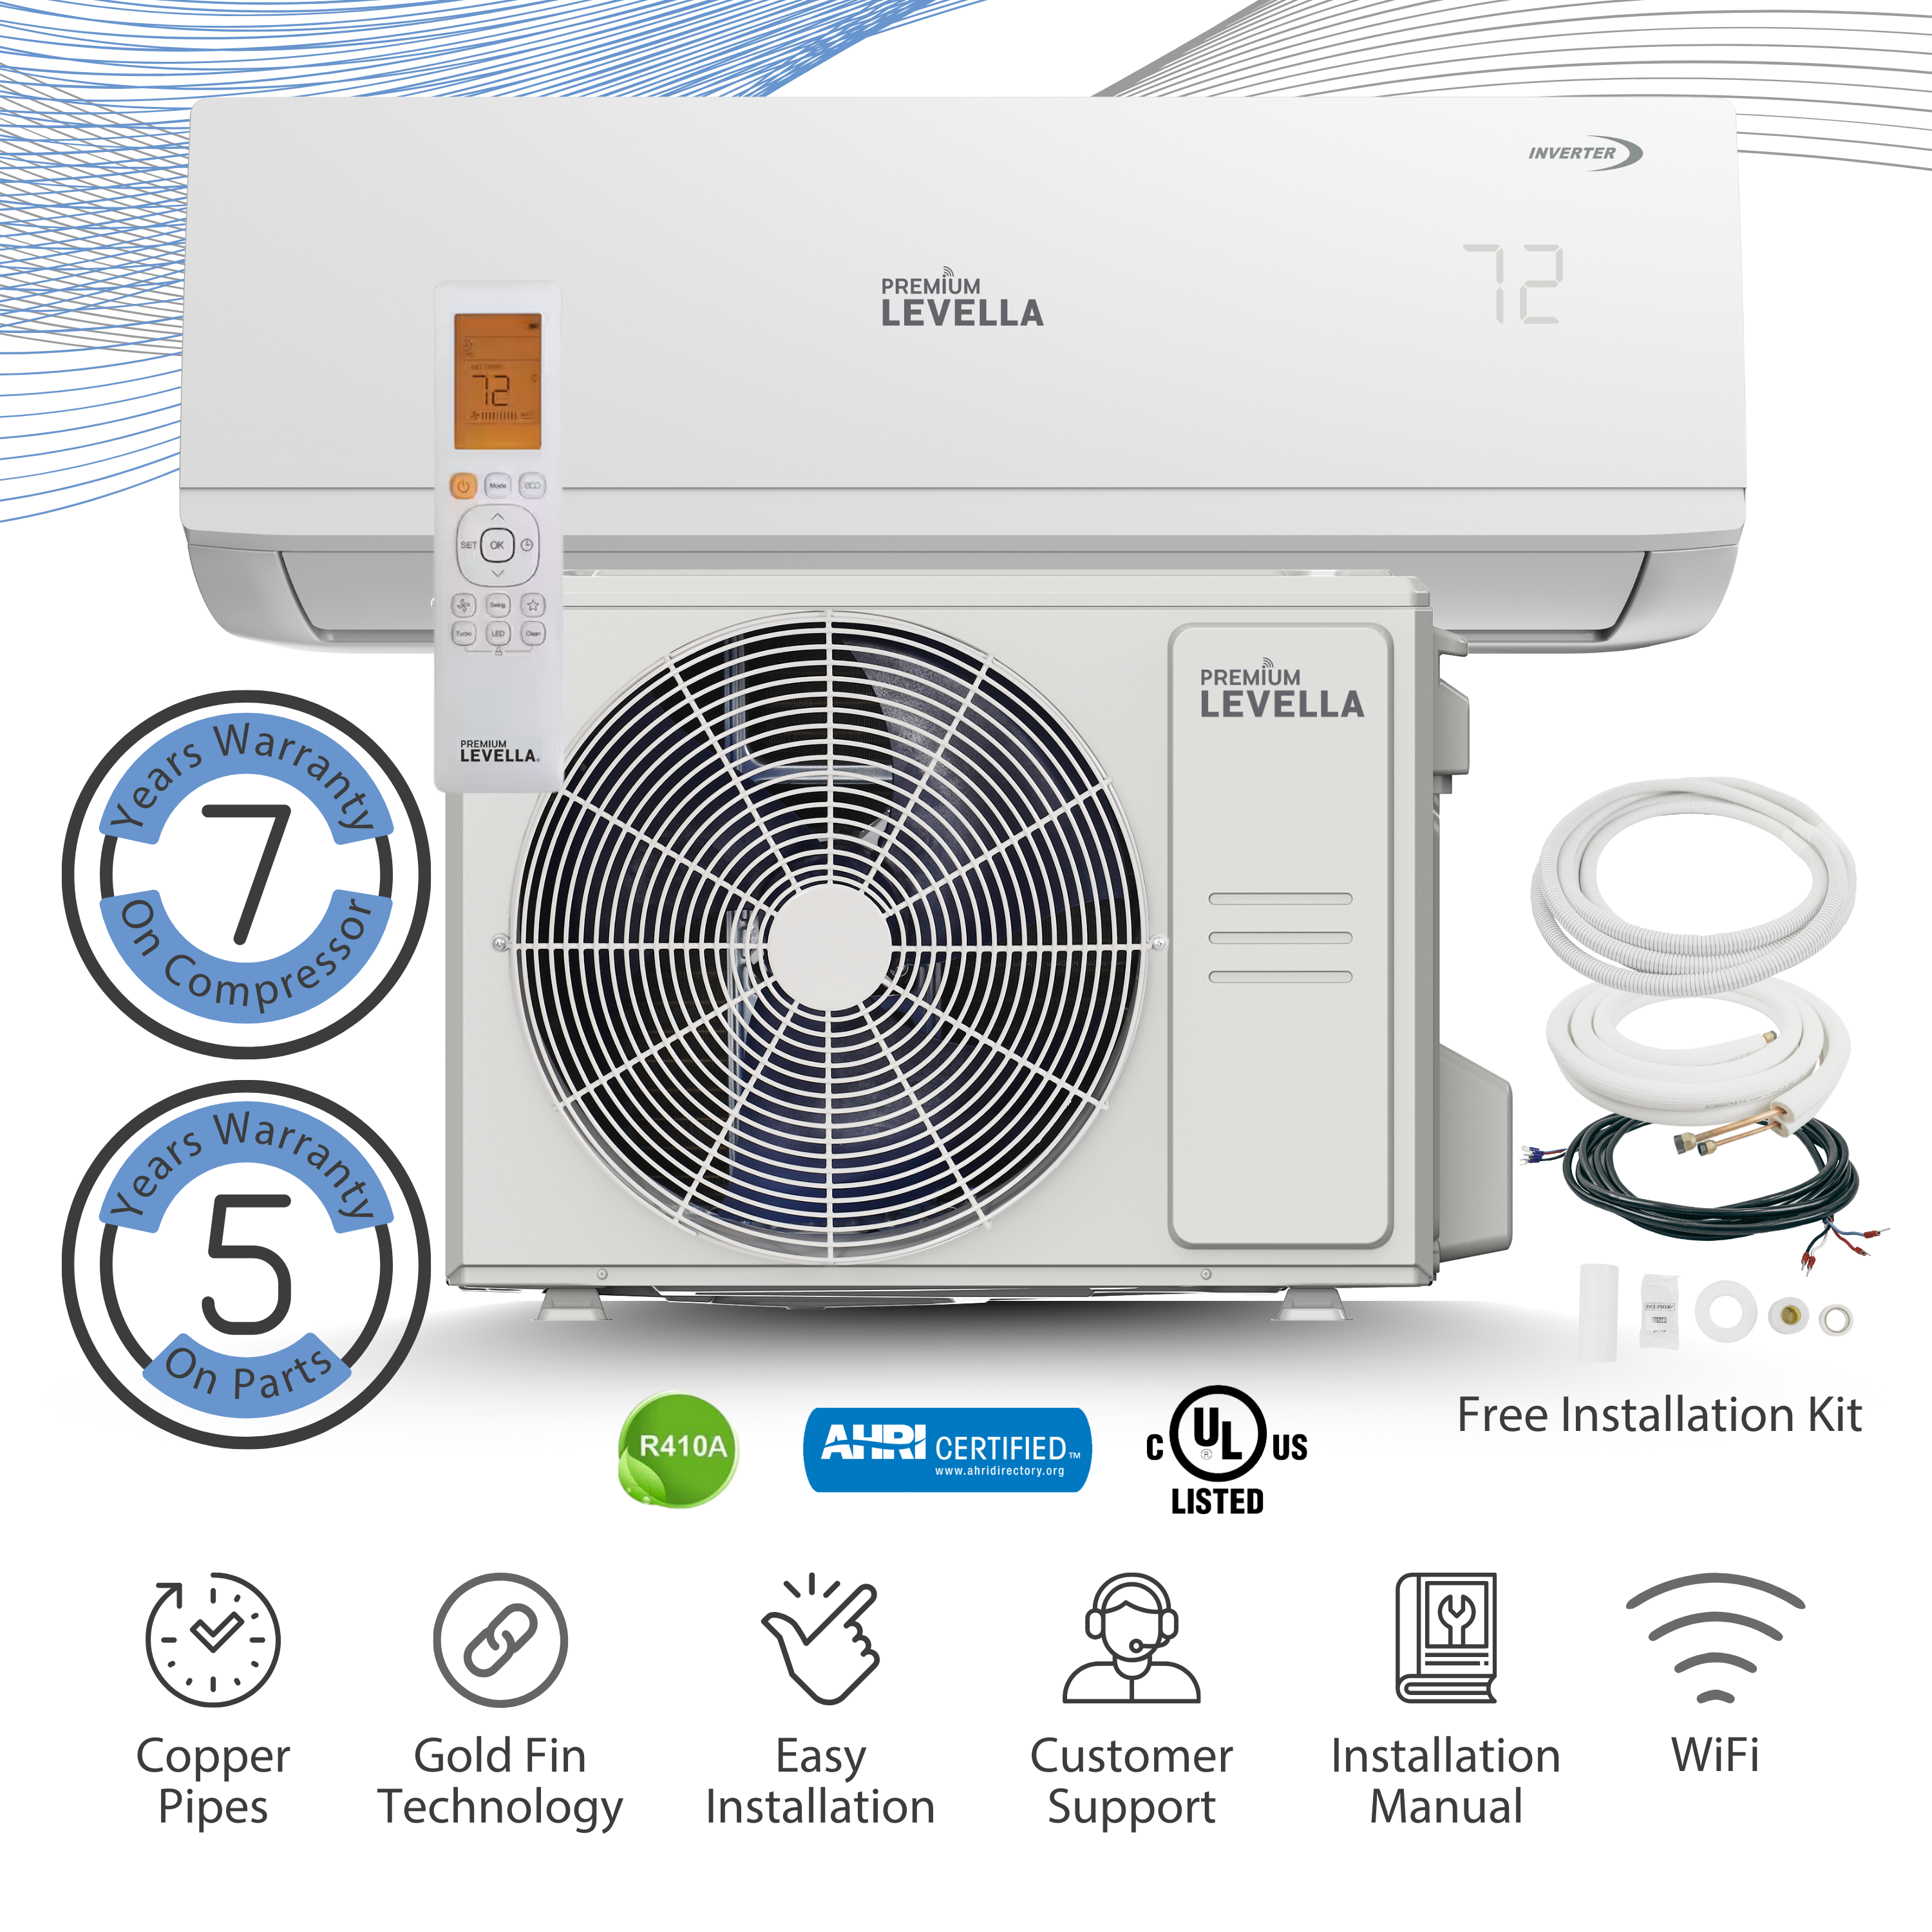 Premium Levella® 12000 Btu Air Conditioner Type Mini Split 21.4 SEER2 Inverter AC Ductless Heat Pump 220V - image 1 of 19